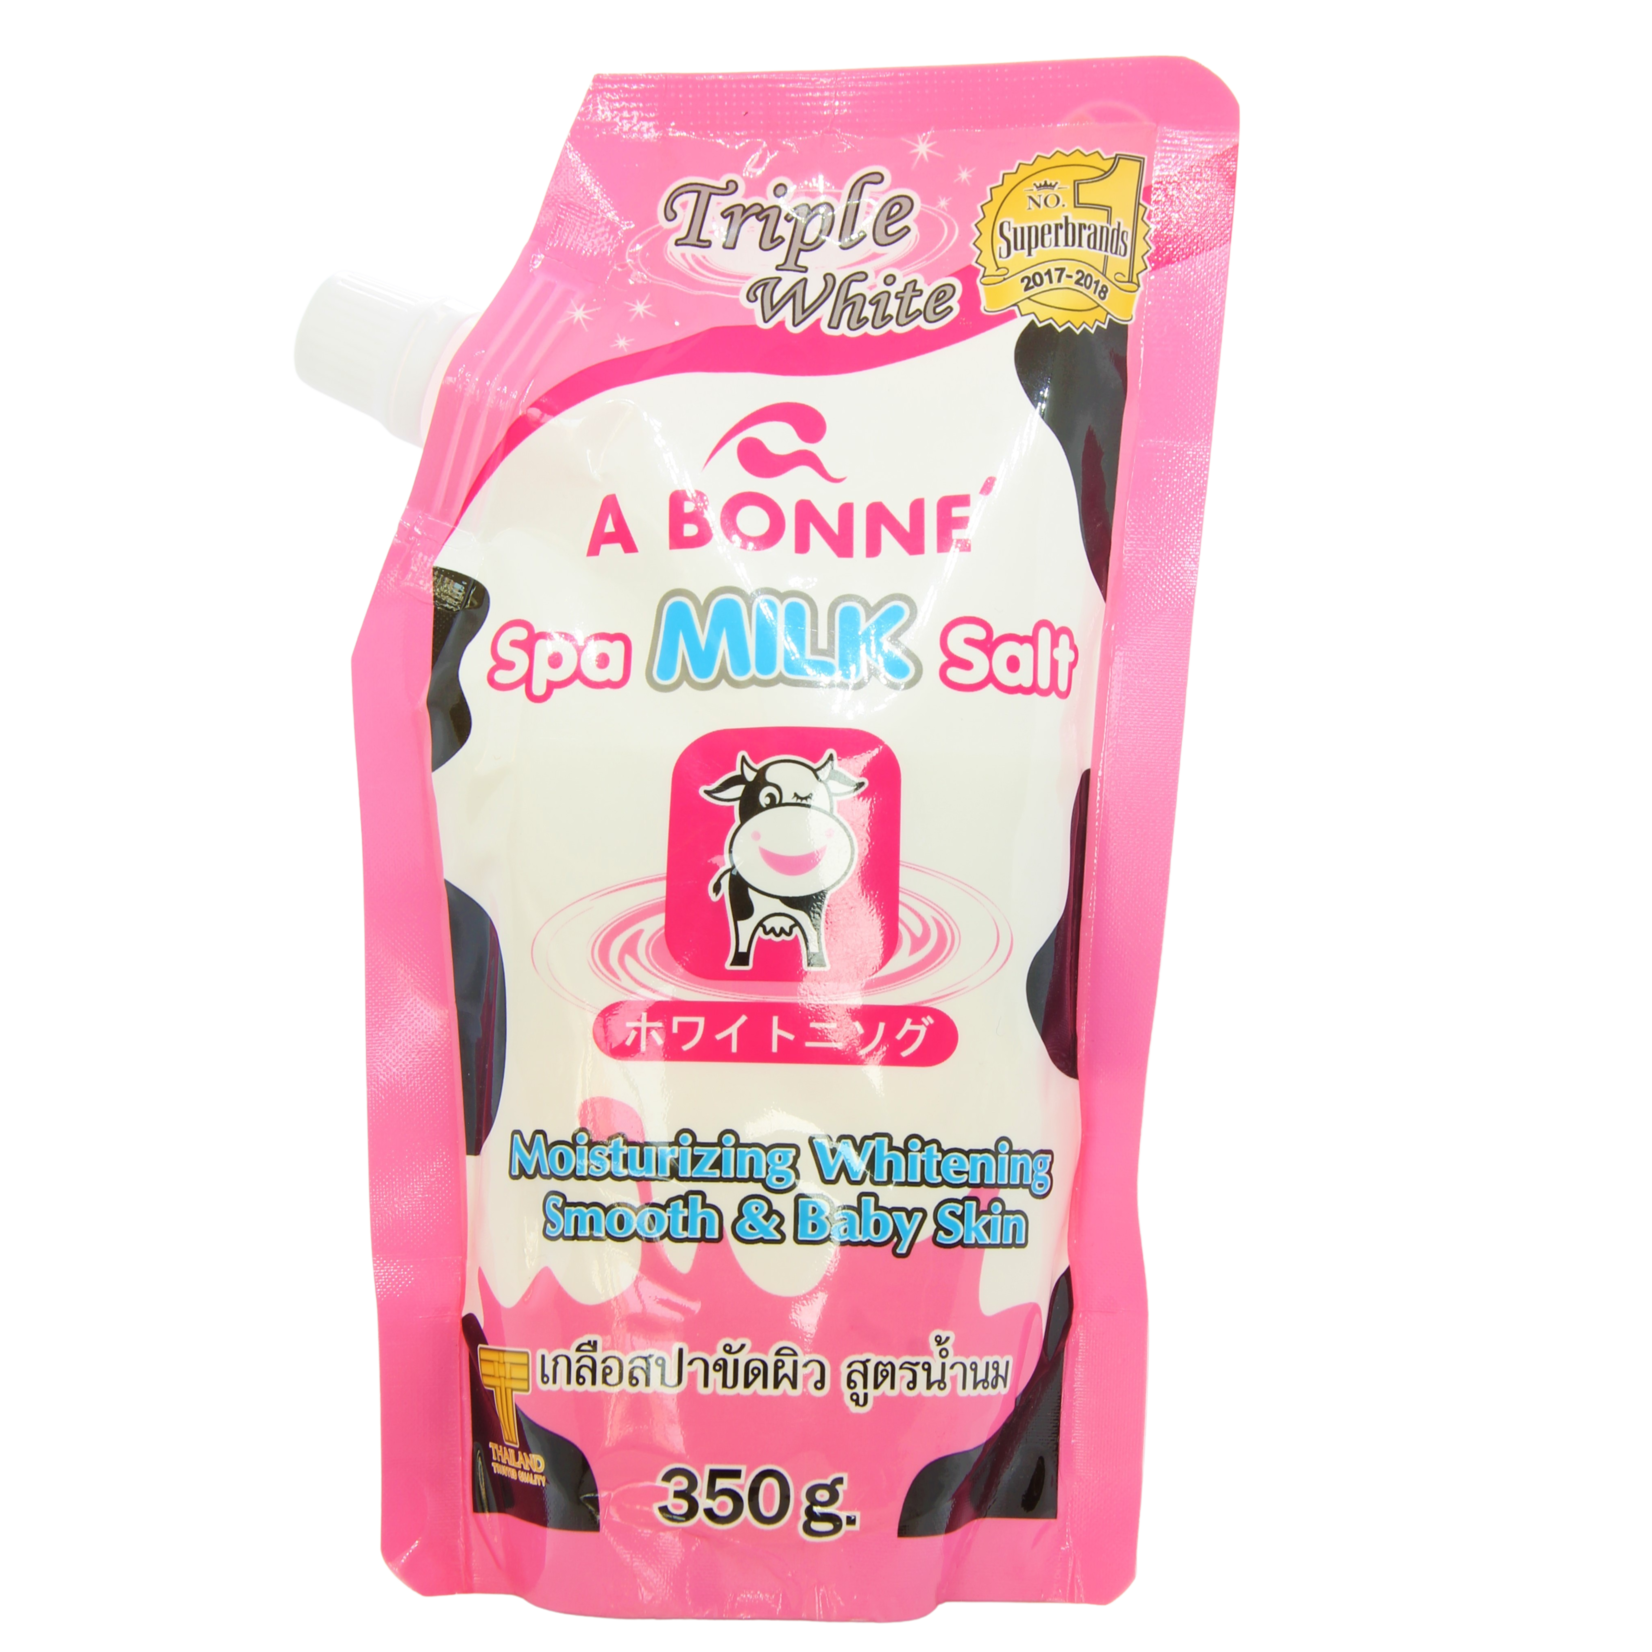 A Bonné, ervaar de schoonheids- en gezondheidsvoordelen van melk! A Bonné Spa Milk Salt 350gr